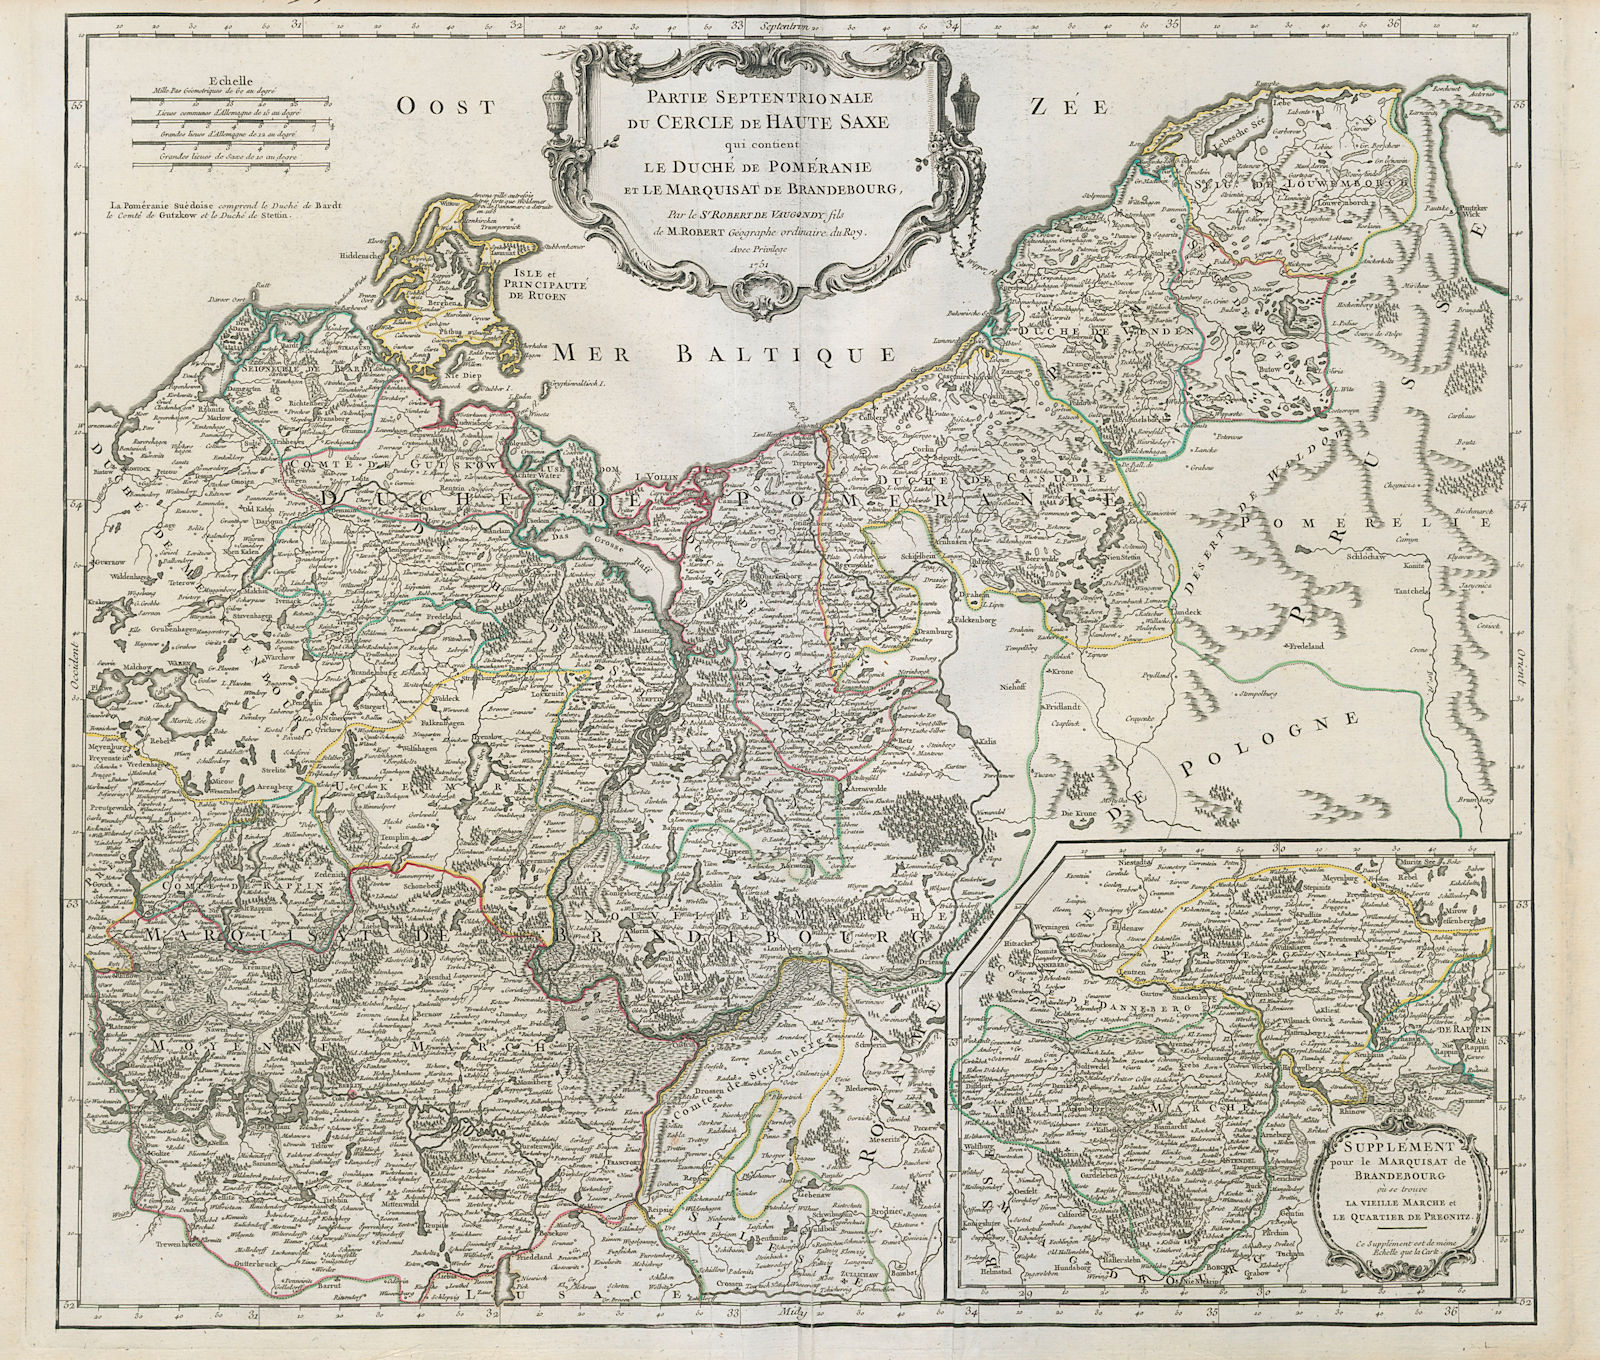 "Partie Septentrionale du Cercle de Haute Saxe". Pomerania. VAUGONDY 1751 map